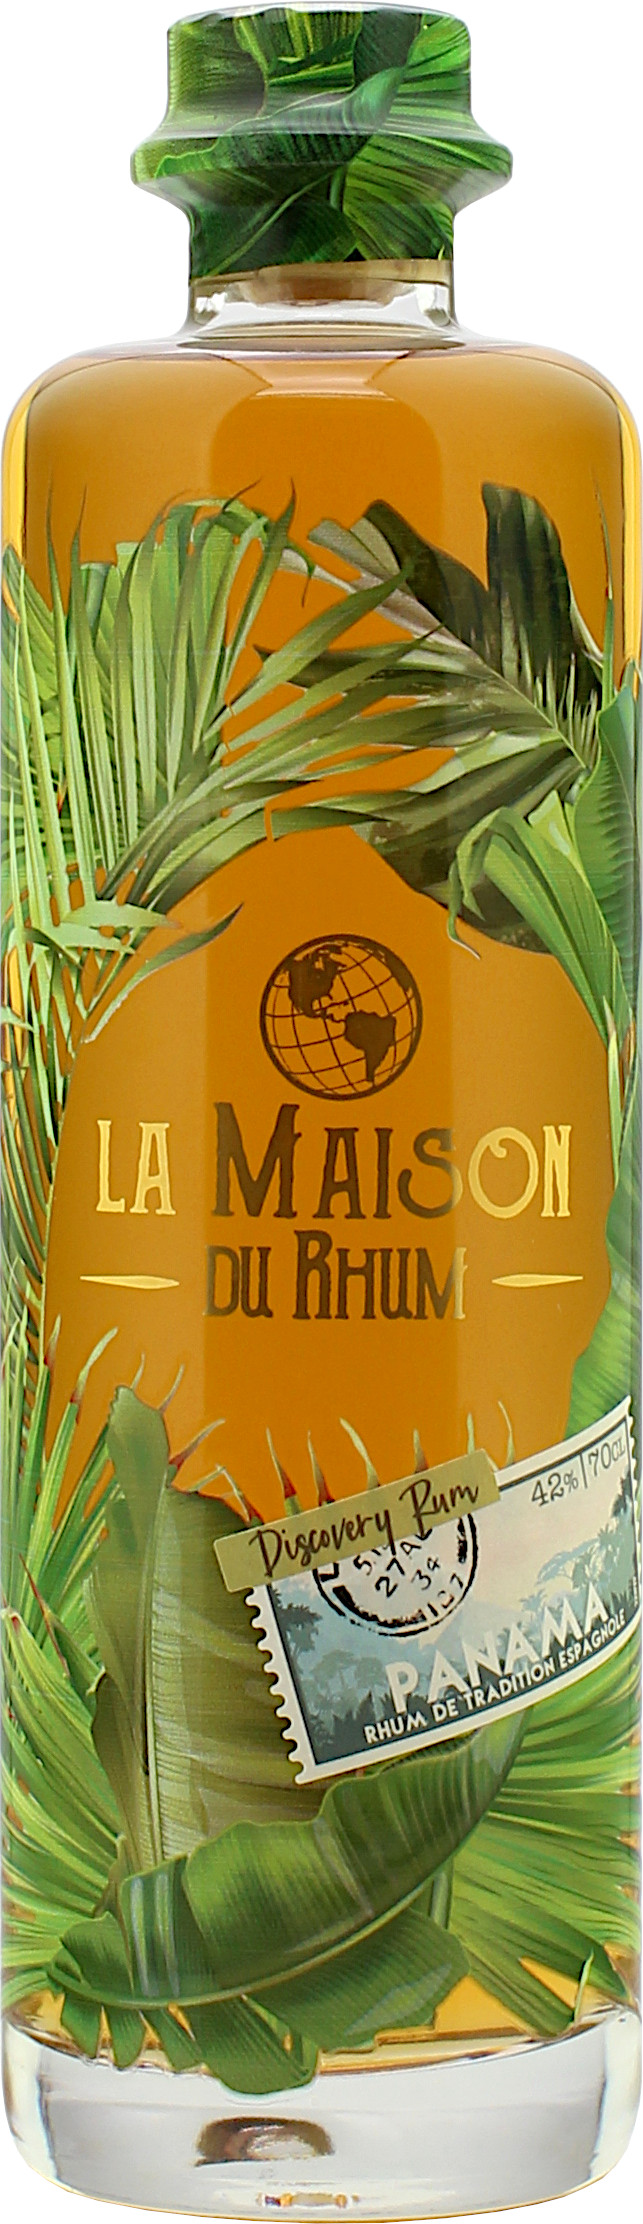 La Maison Du Rhum Discovery Rum Panama 42.0% 0,7l